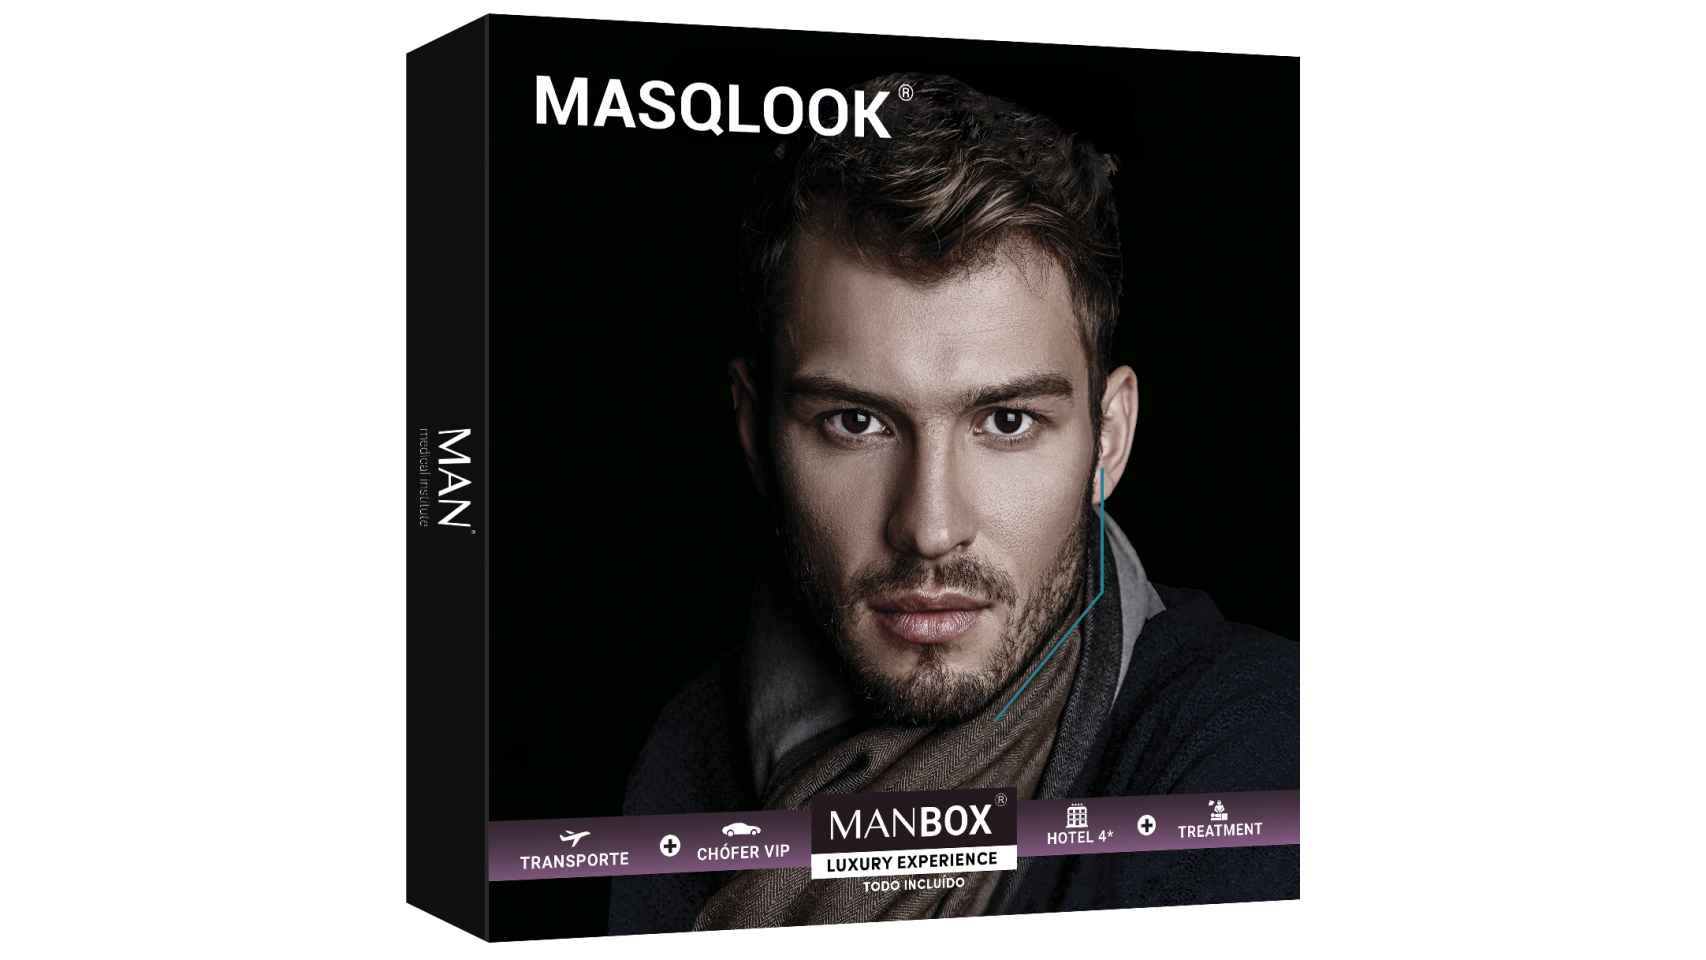 El ácido hialurónico de Masqlook aporta un aspecto más masculino al rostro.